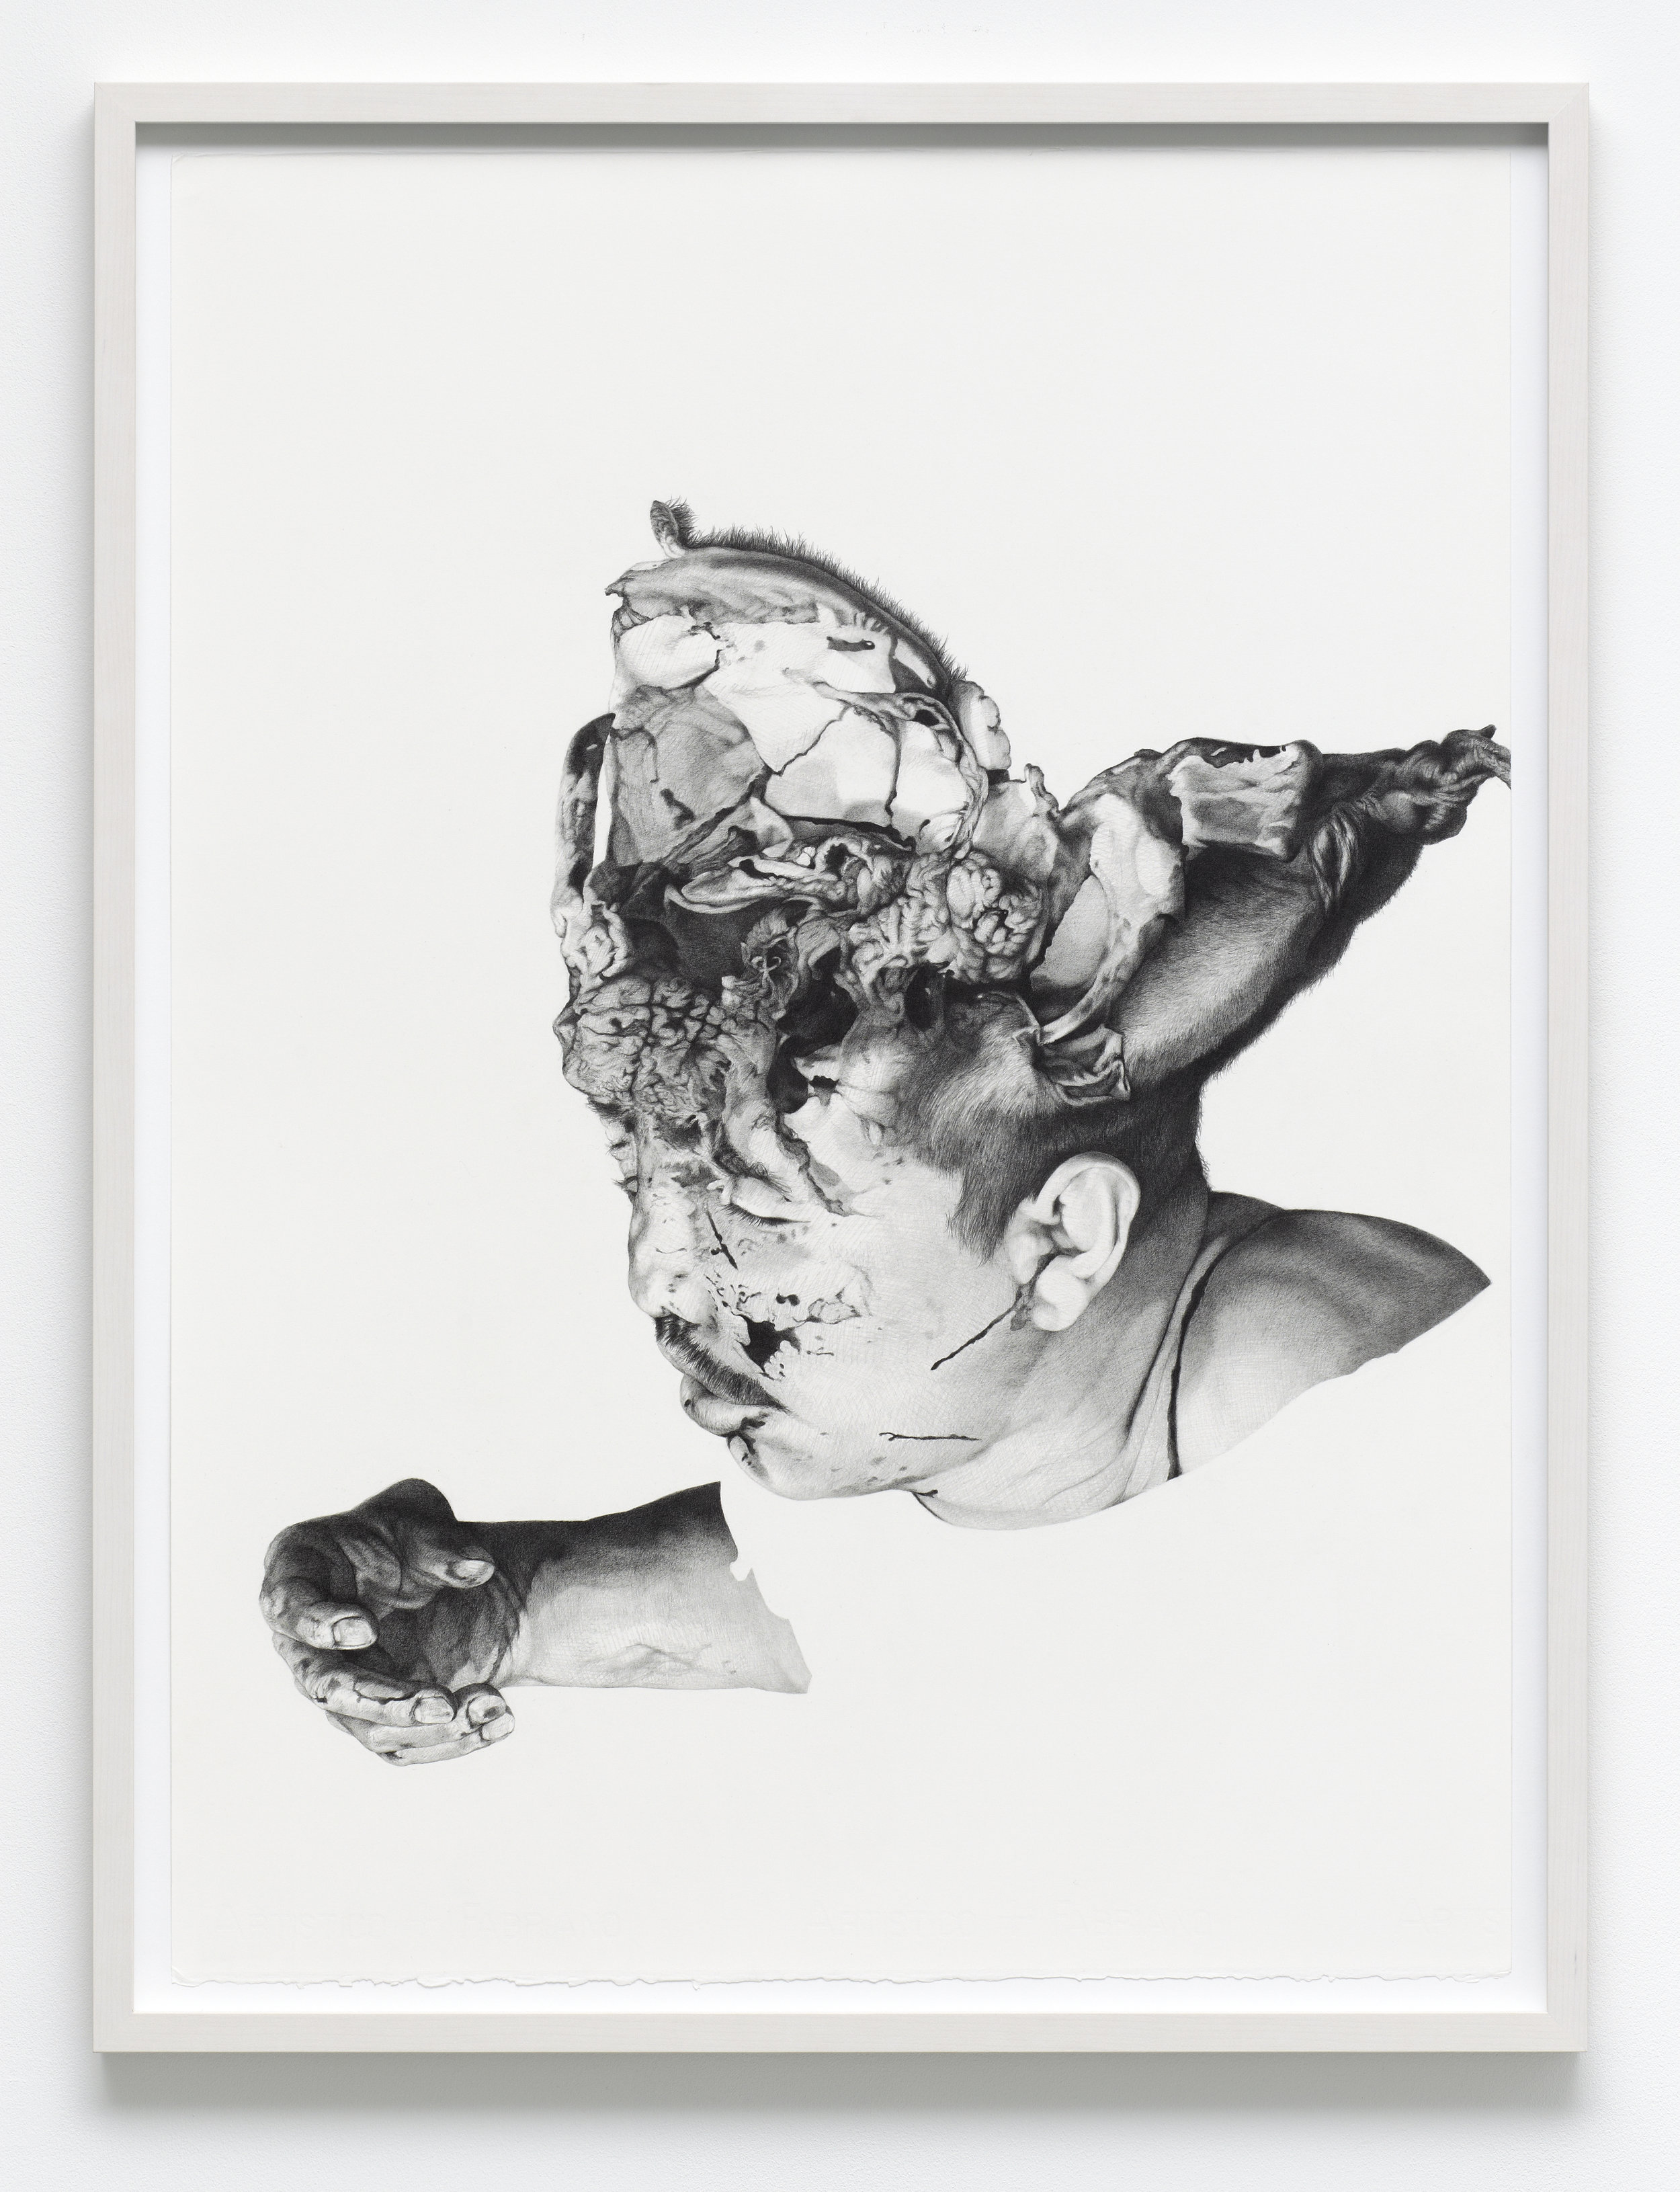  “post-human (unidentified, Nuevo Laredo, 2011)” graphite on paper, 56 x 76 cm, 2012. 